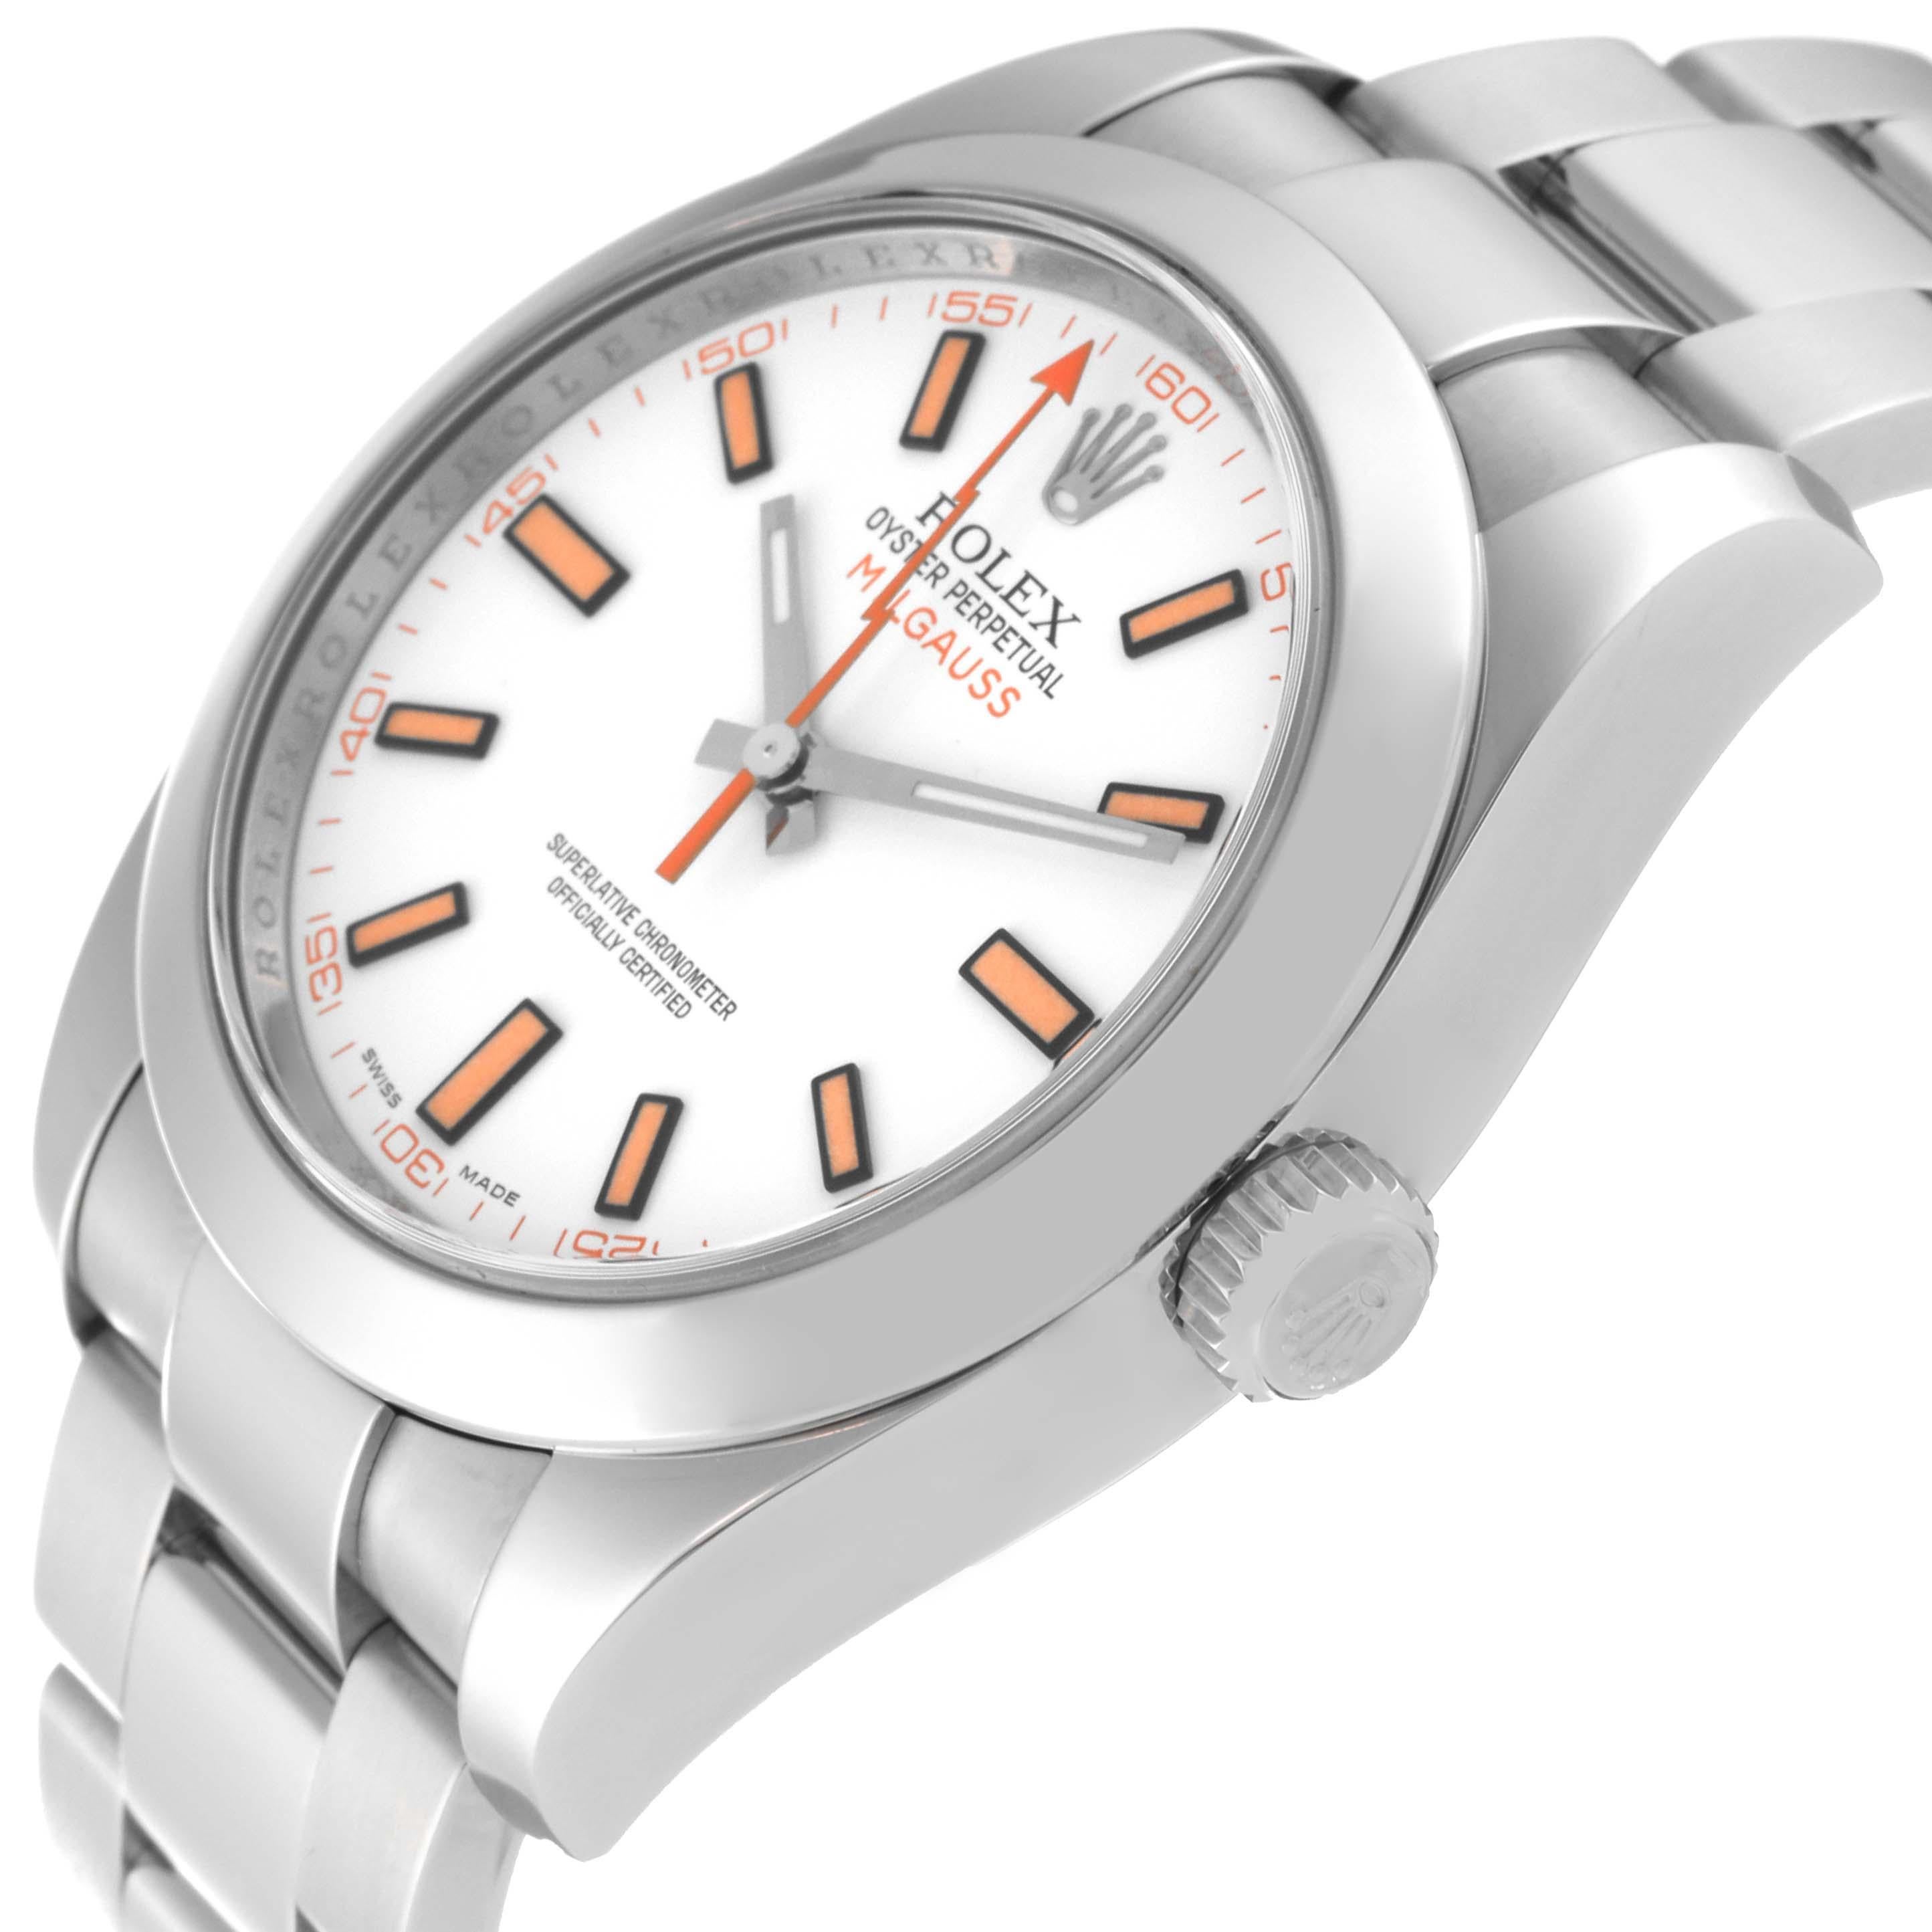 Rolex Milgauss Weißes Zifferblatt Orange Markers Stahl-Herrenuhr 116400 2